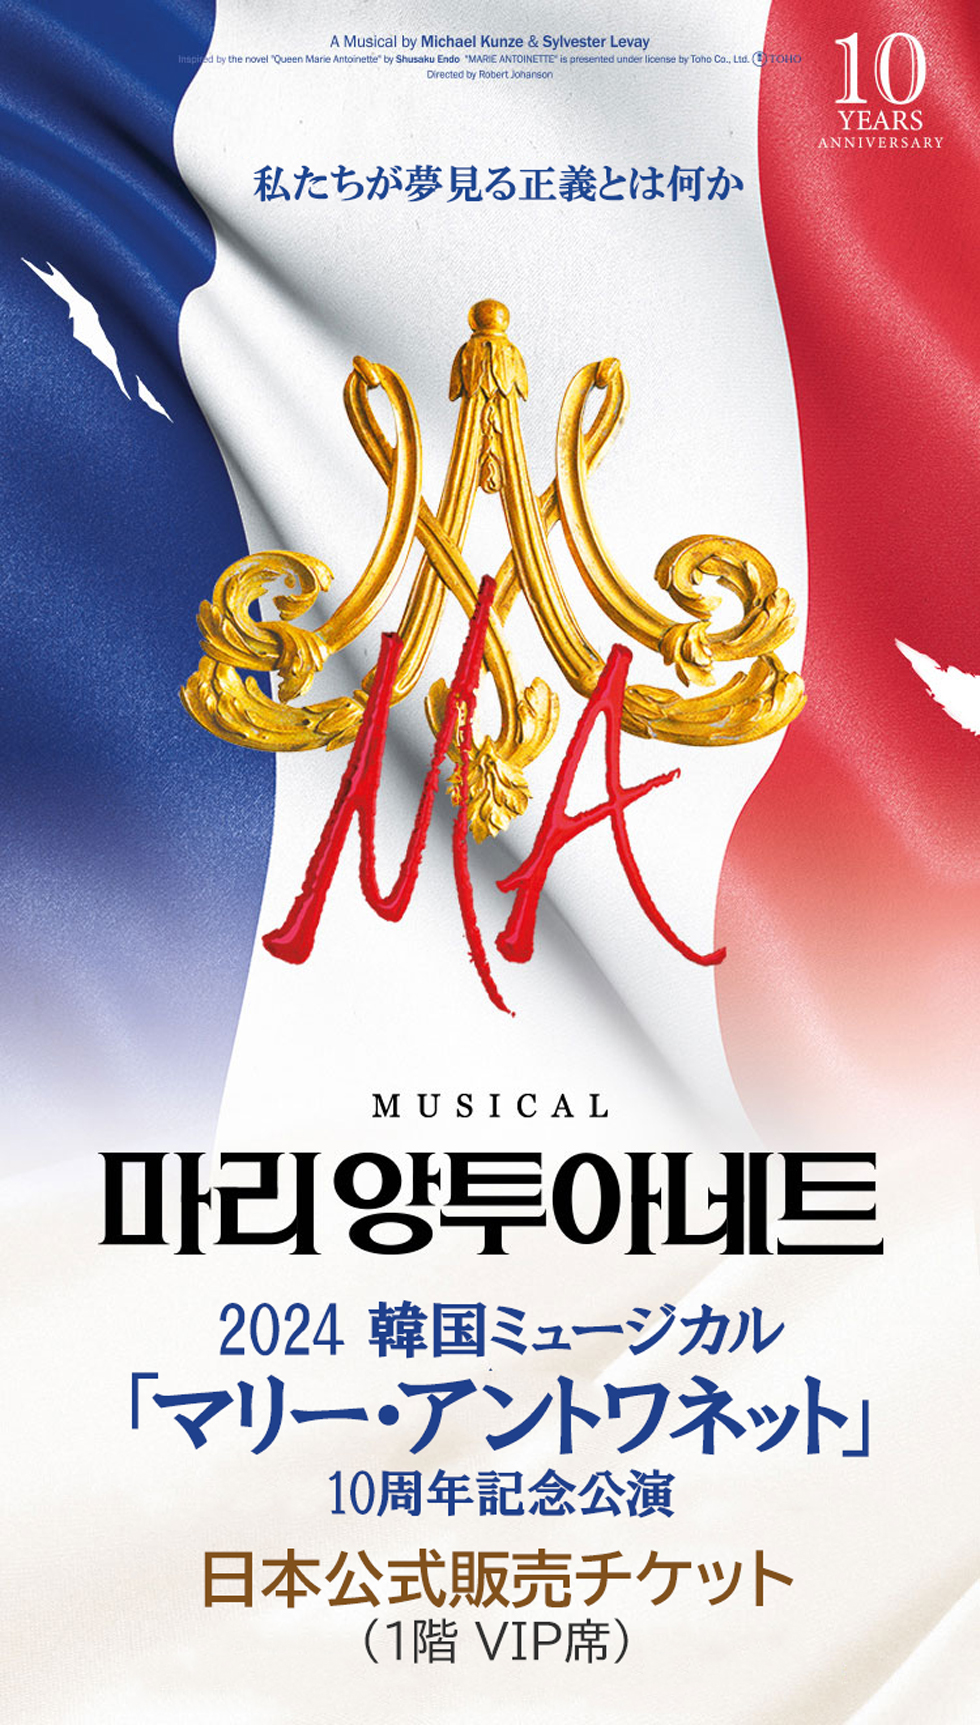 【日本公式販売】2024 韓国ミュージカル「マリー・アントワネット」10周年記念公演 日本公式チケット (1階 VIP席)